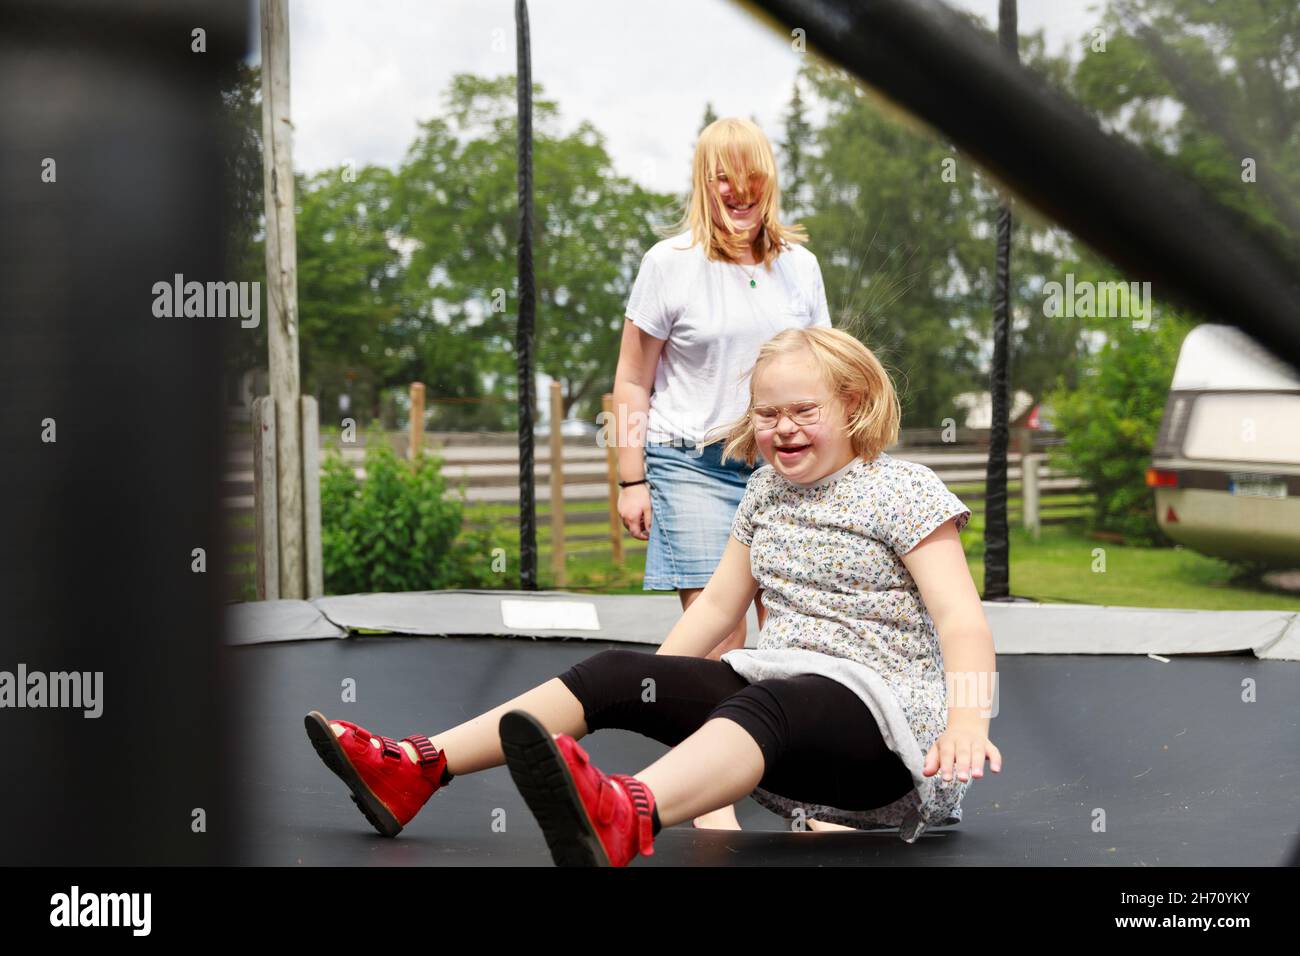 Des filles souriantes jouant sur le trampoline Banque D'Images